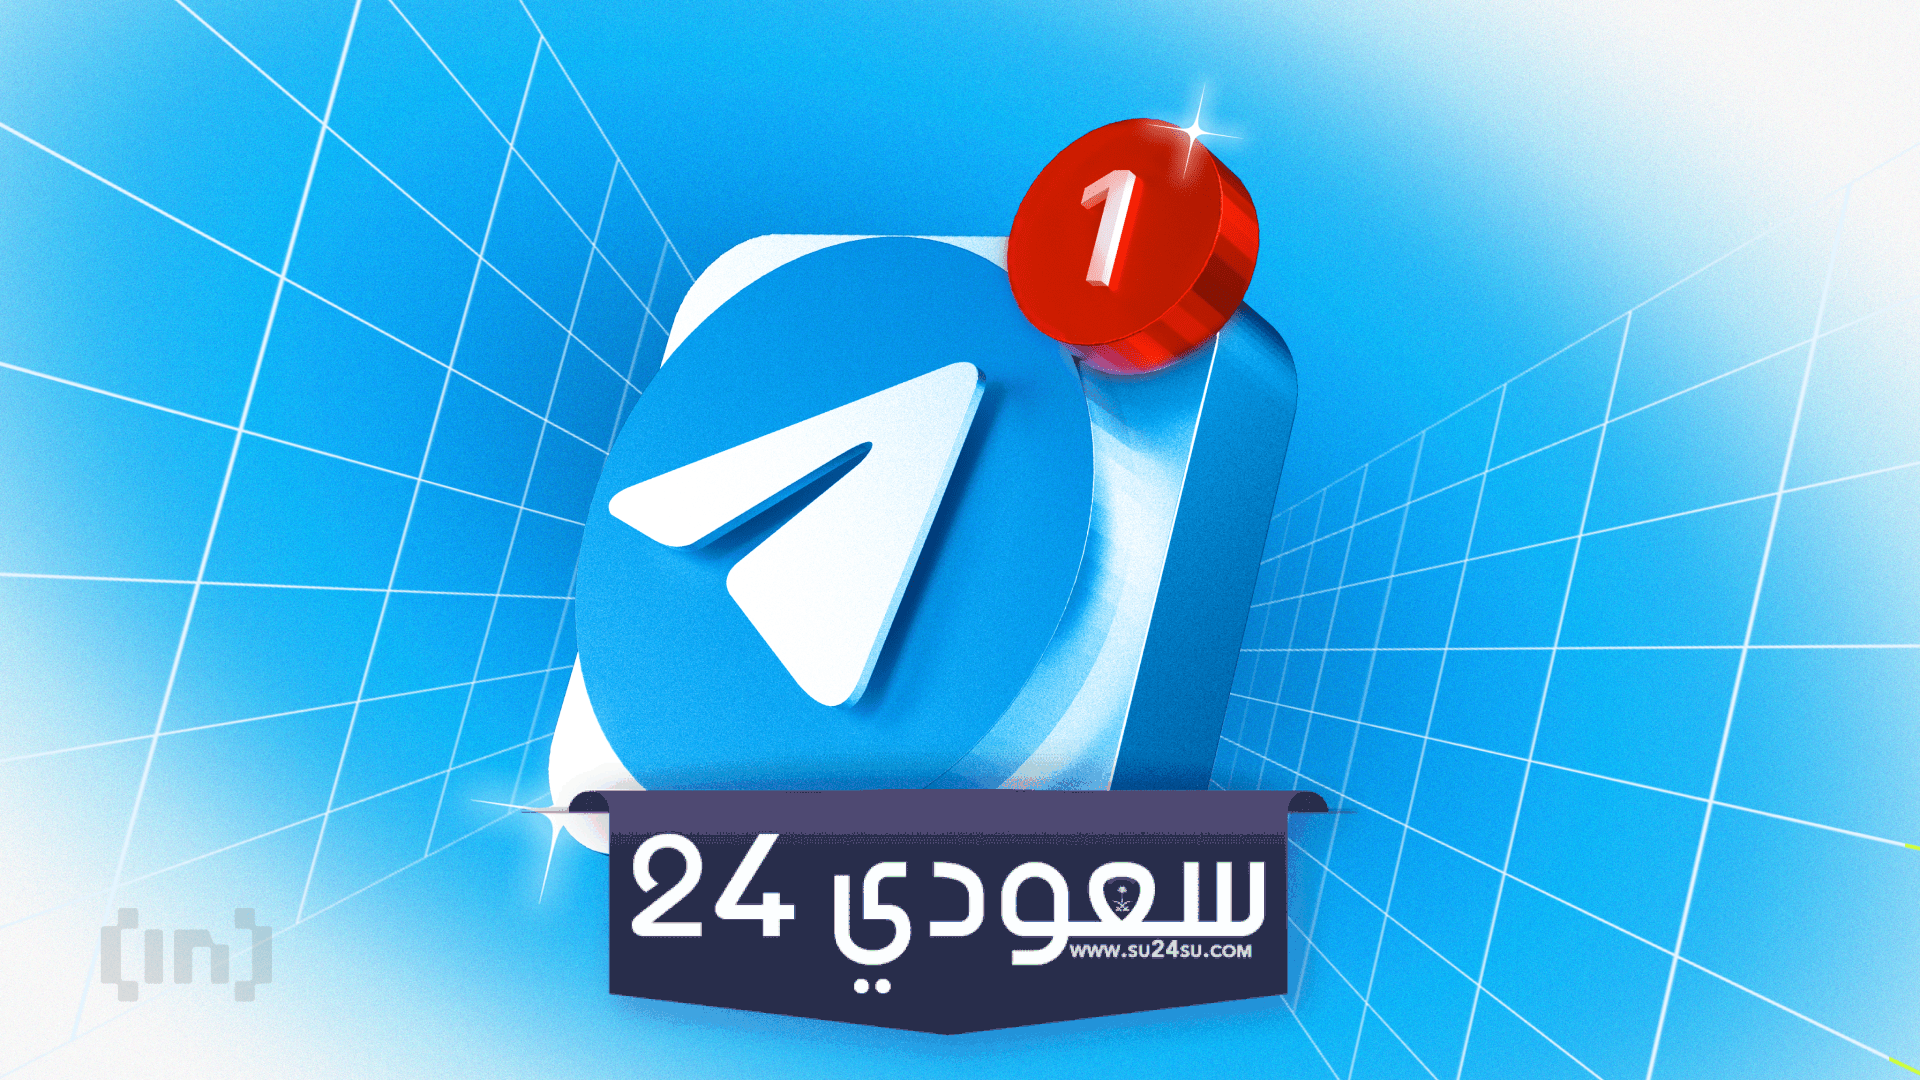 لعبة “Hamster Kombat ” للعملات الرقمية على تيليجرام تشعل الجدل السياسي في الإيراني